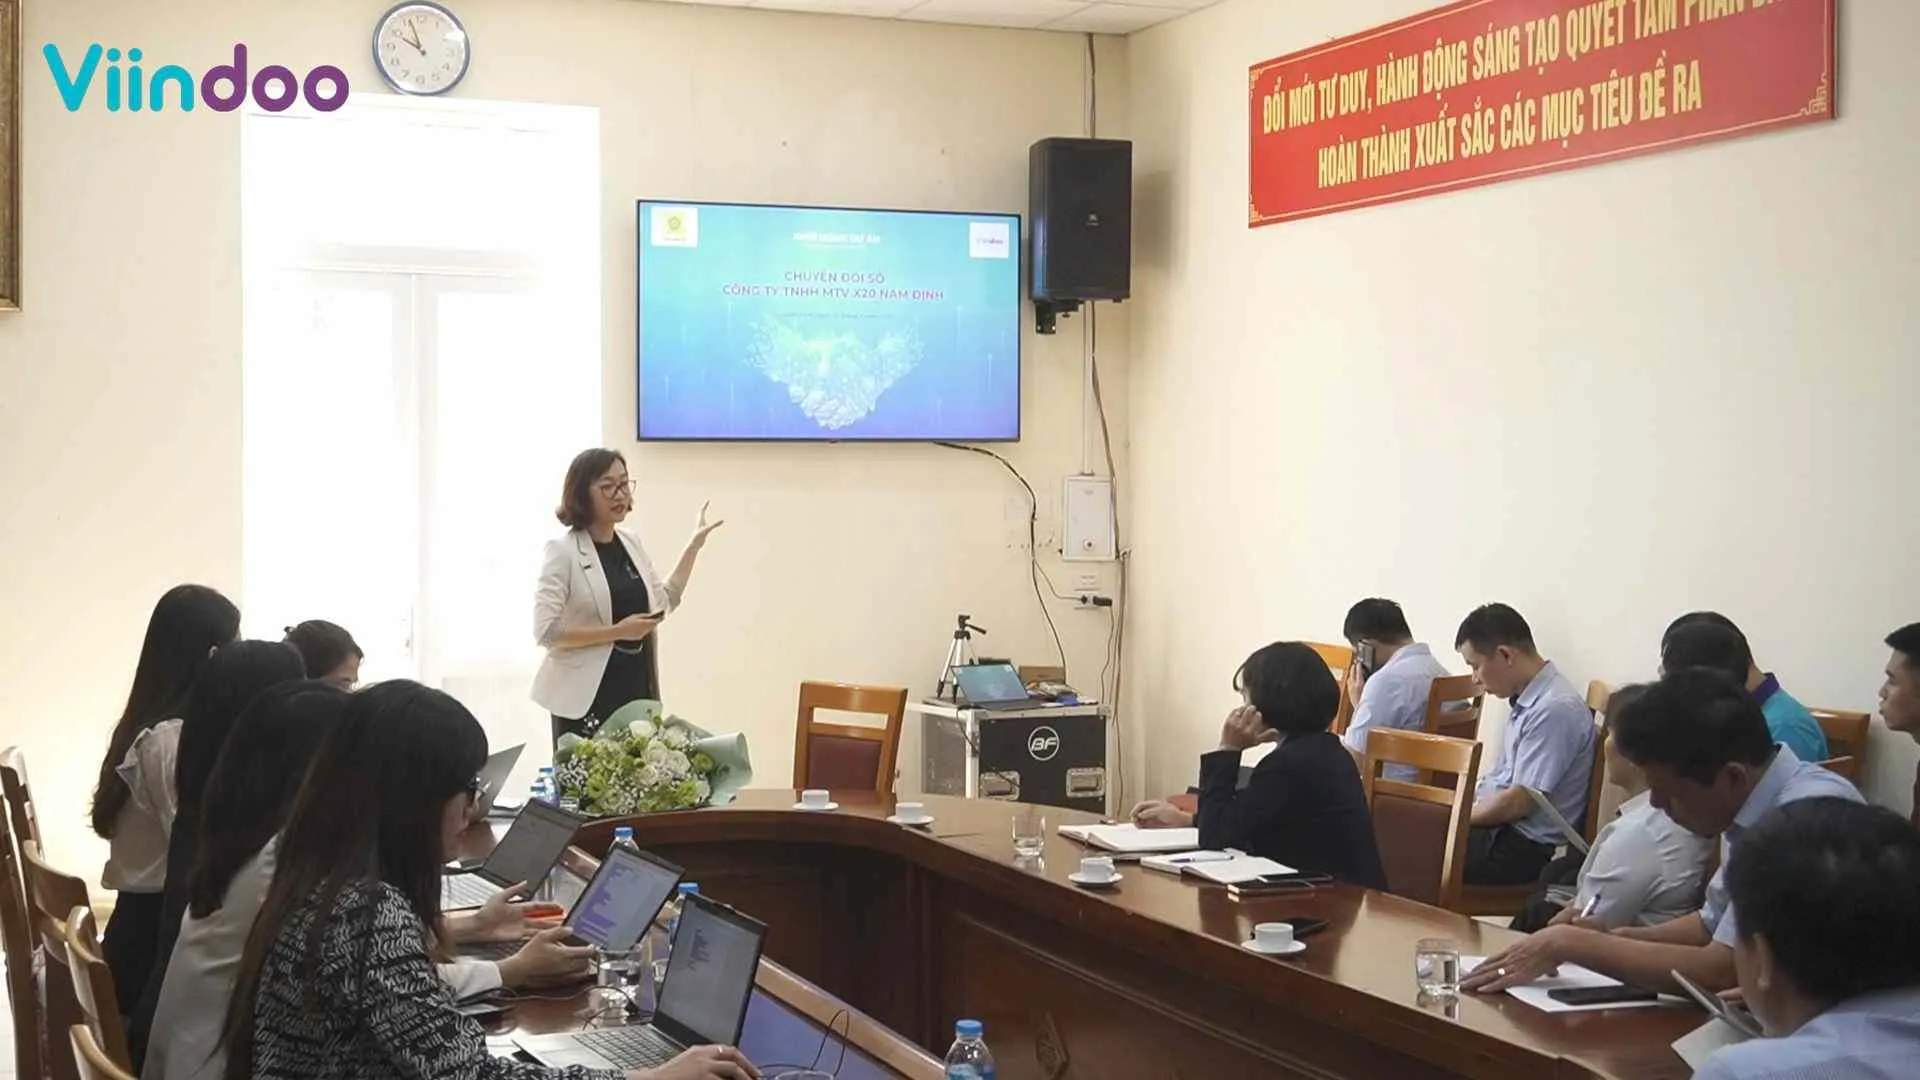 Bà Nguyễn Thị Liên - Giám đốc Kinh doanh Công ty CP Công nghệ Viindoo tại buổi Khởi động dự án.